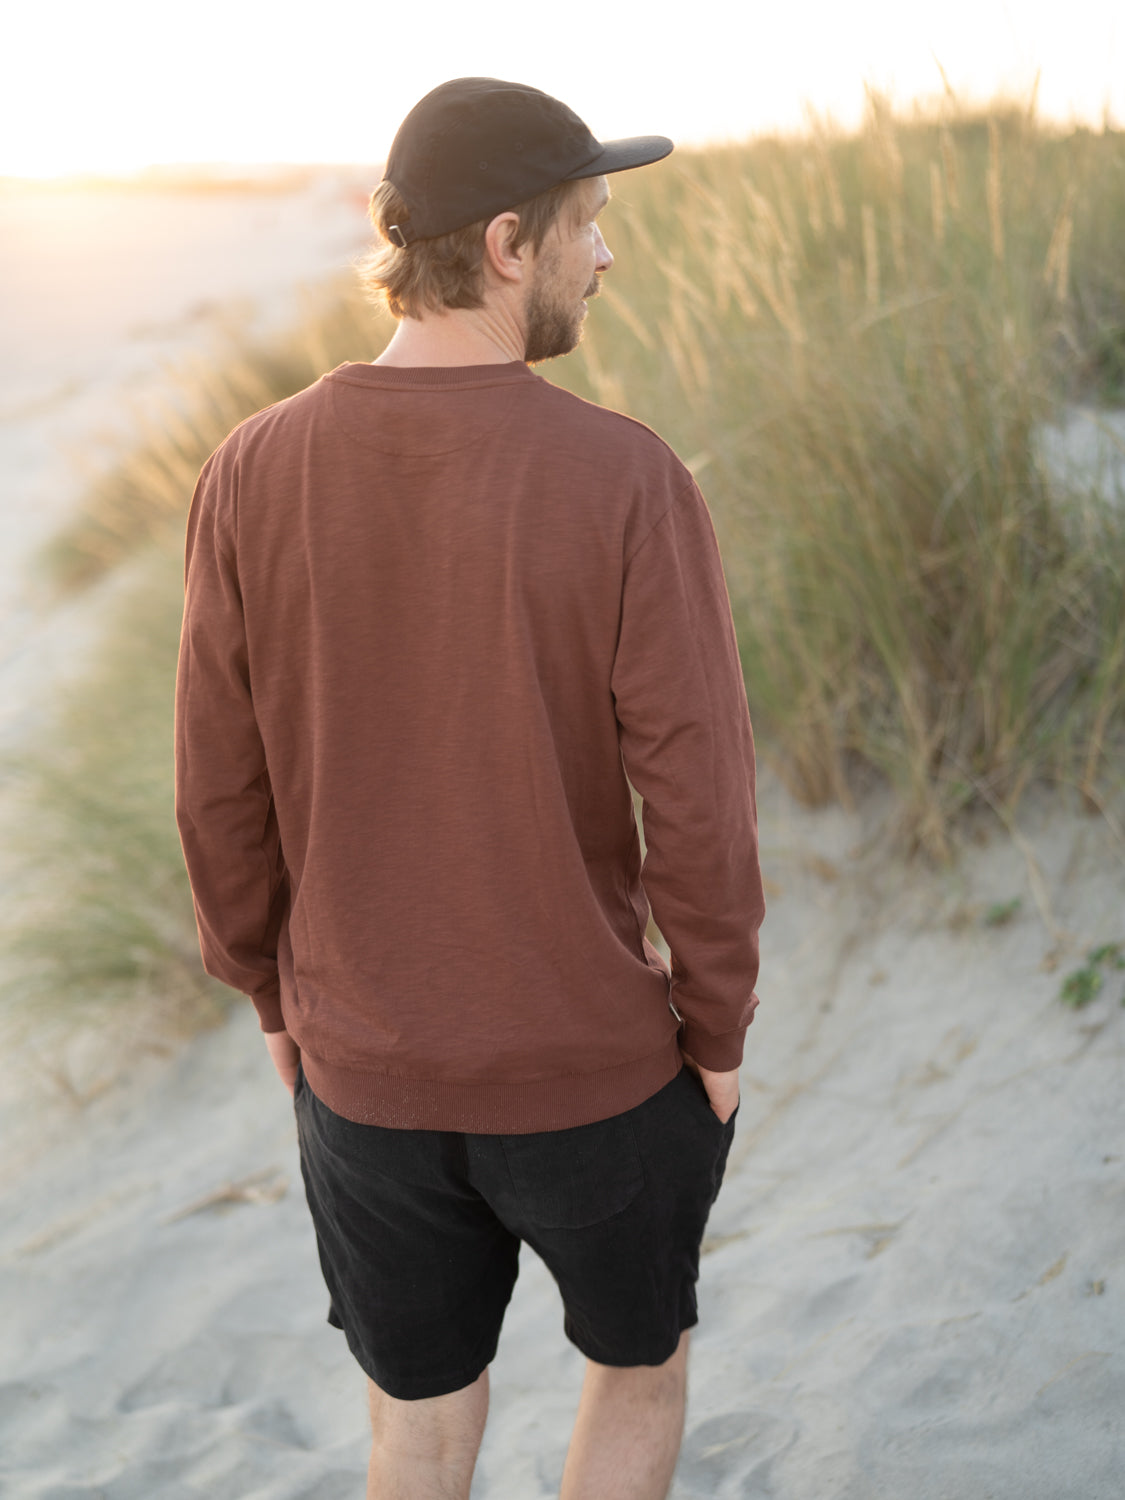 Kenny trägt den nachhaltigen und fair produzierten Männer fux Sweater in braun aus 100% GOTS zertifizierter Biobaumwolle am Strand.